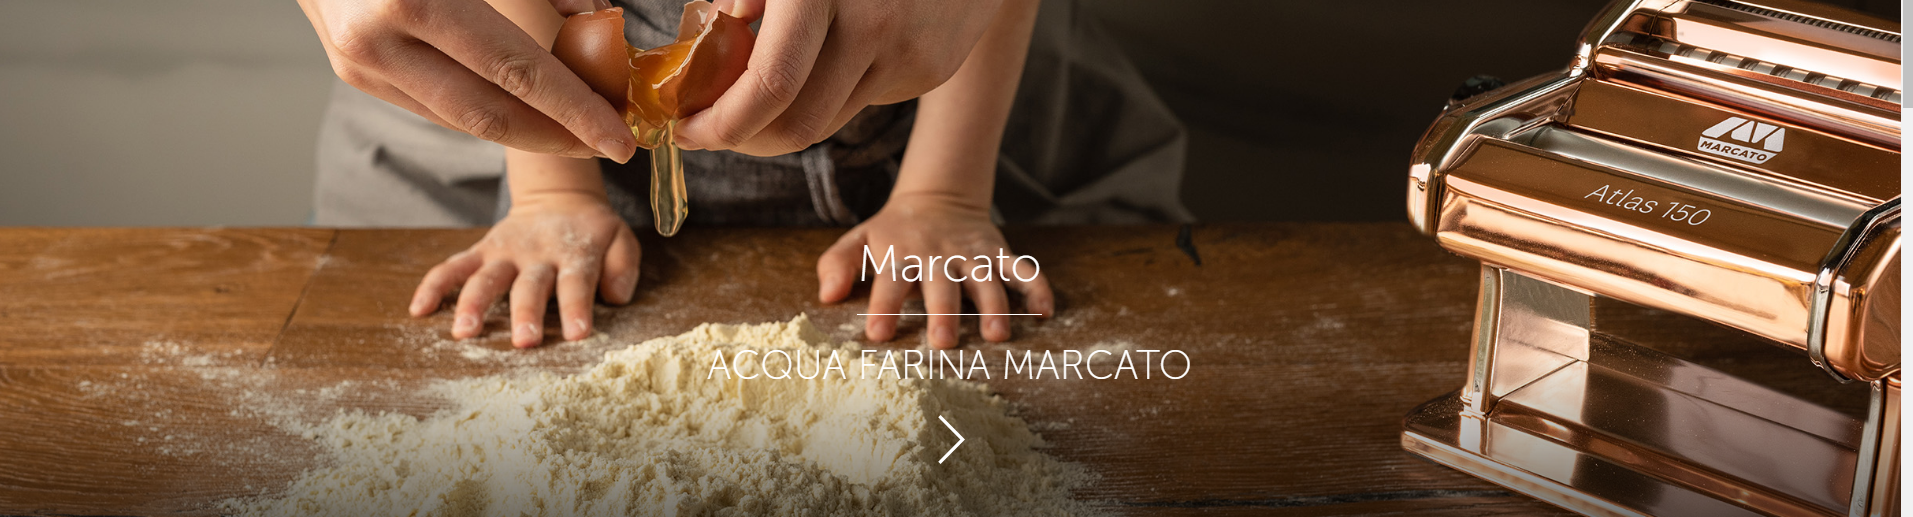 Marcato Atlas Black 150 mm Wellness Pasta Maker